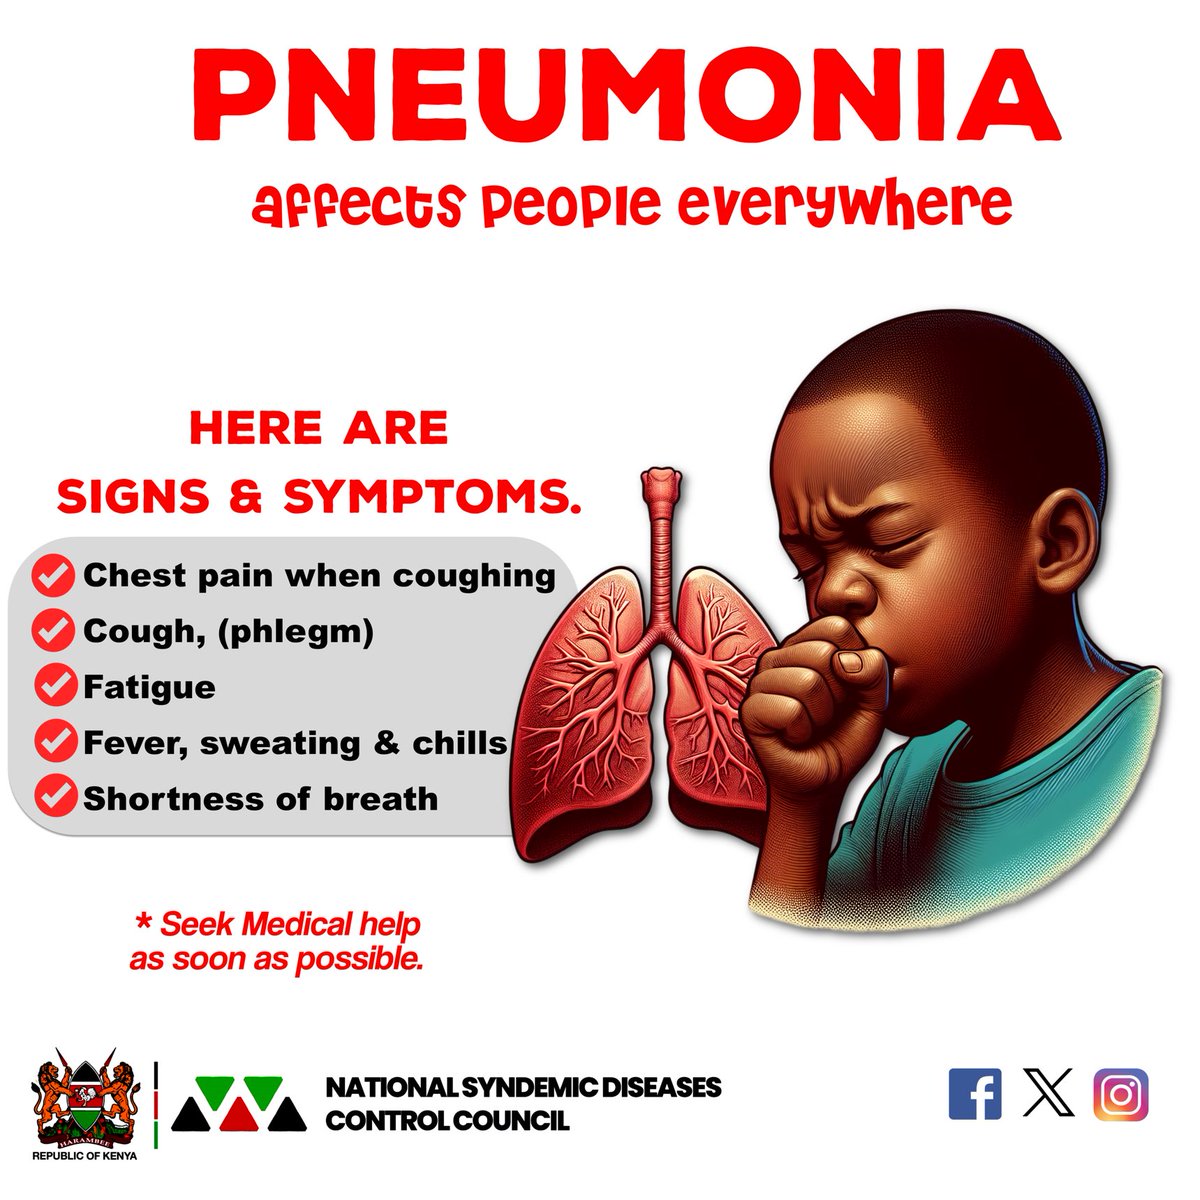 PNEUMONIA affects people everywhere. Seek Medical help as soon as possible.
#Pneumonia
#adheretoart
#EndAIDSby2030